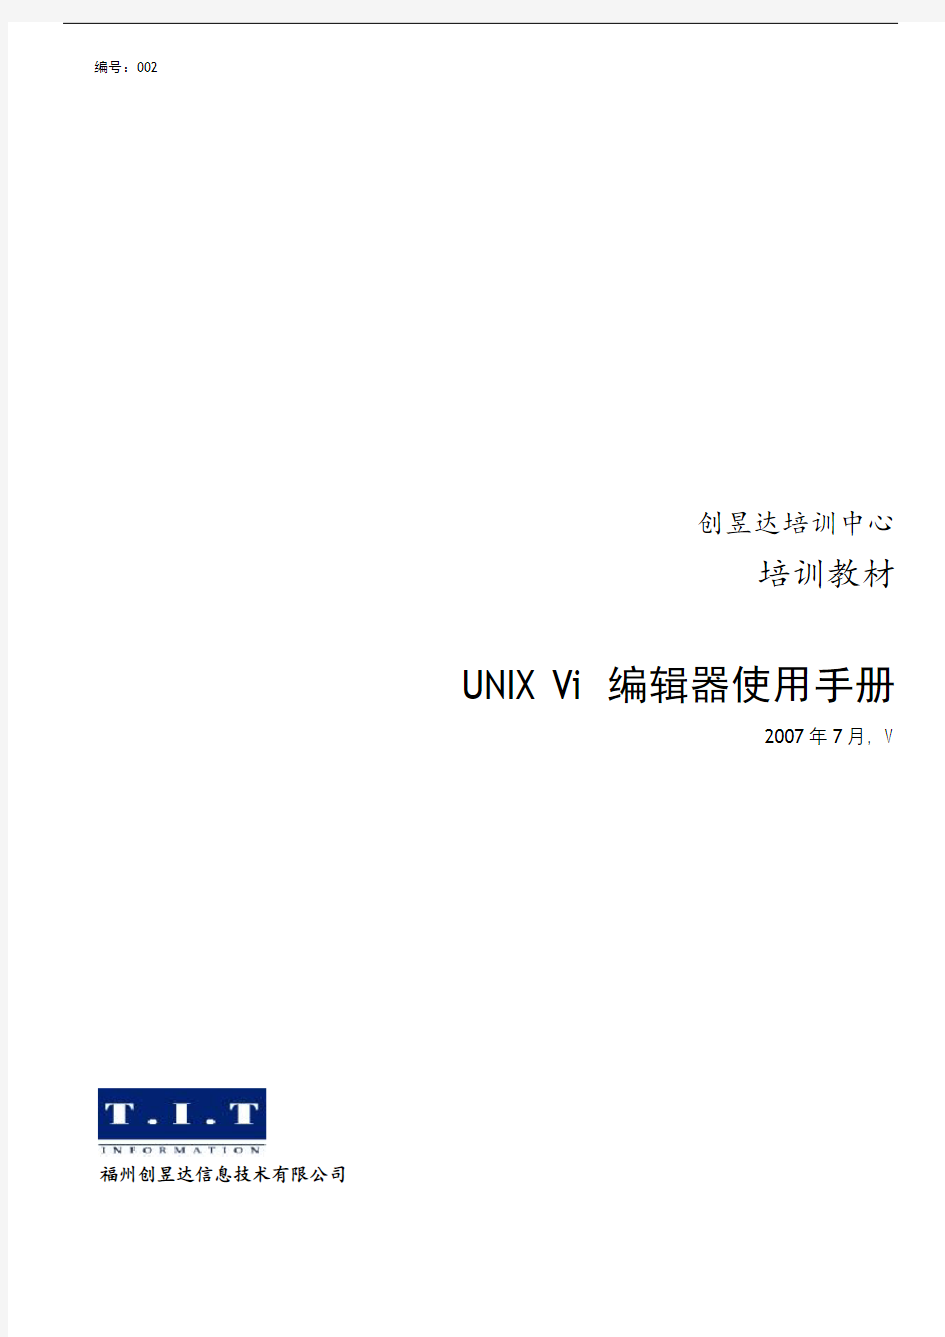 培训教材UniVi编辑器使用手册